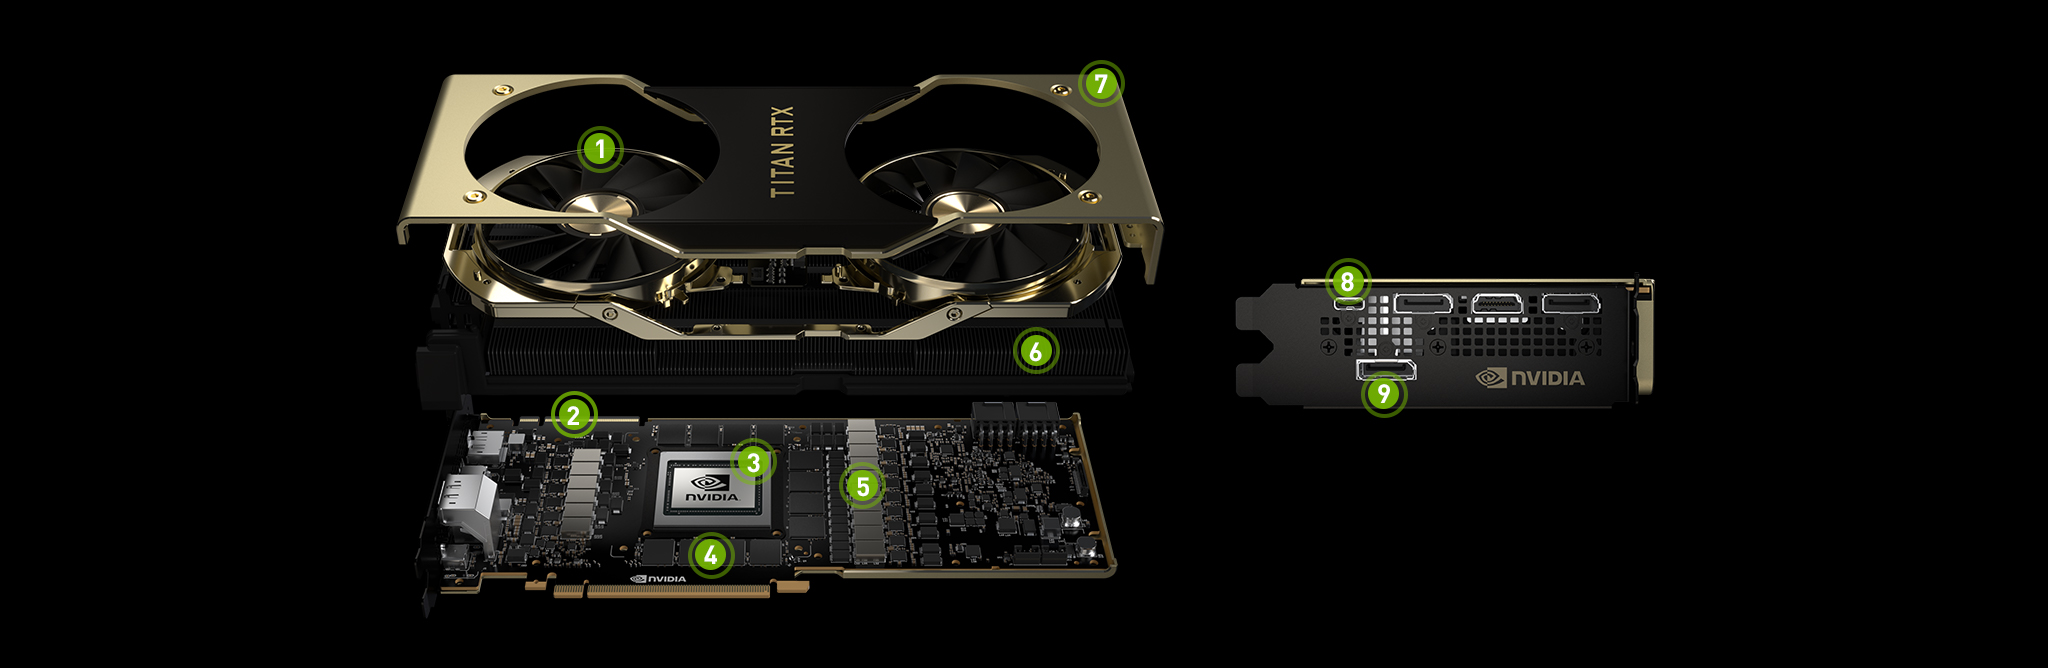 Immagine pubblicata in relazione al seguente contenuto: NVIDIA annuncia la monster card TITAN RTX con GPU Turing TU102 e 24GB GDDR6 | Nome immagine: news29029_NVIDIA-TITAN-RTX_9.jpg